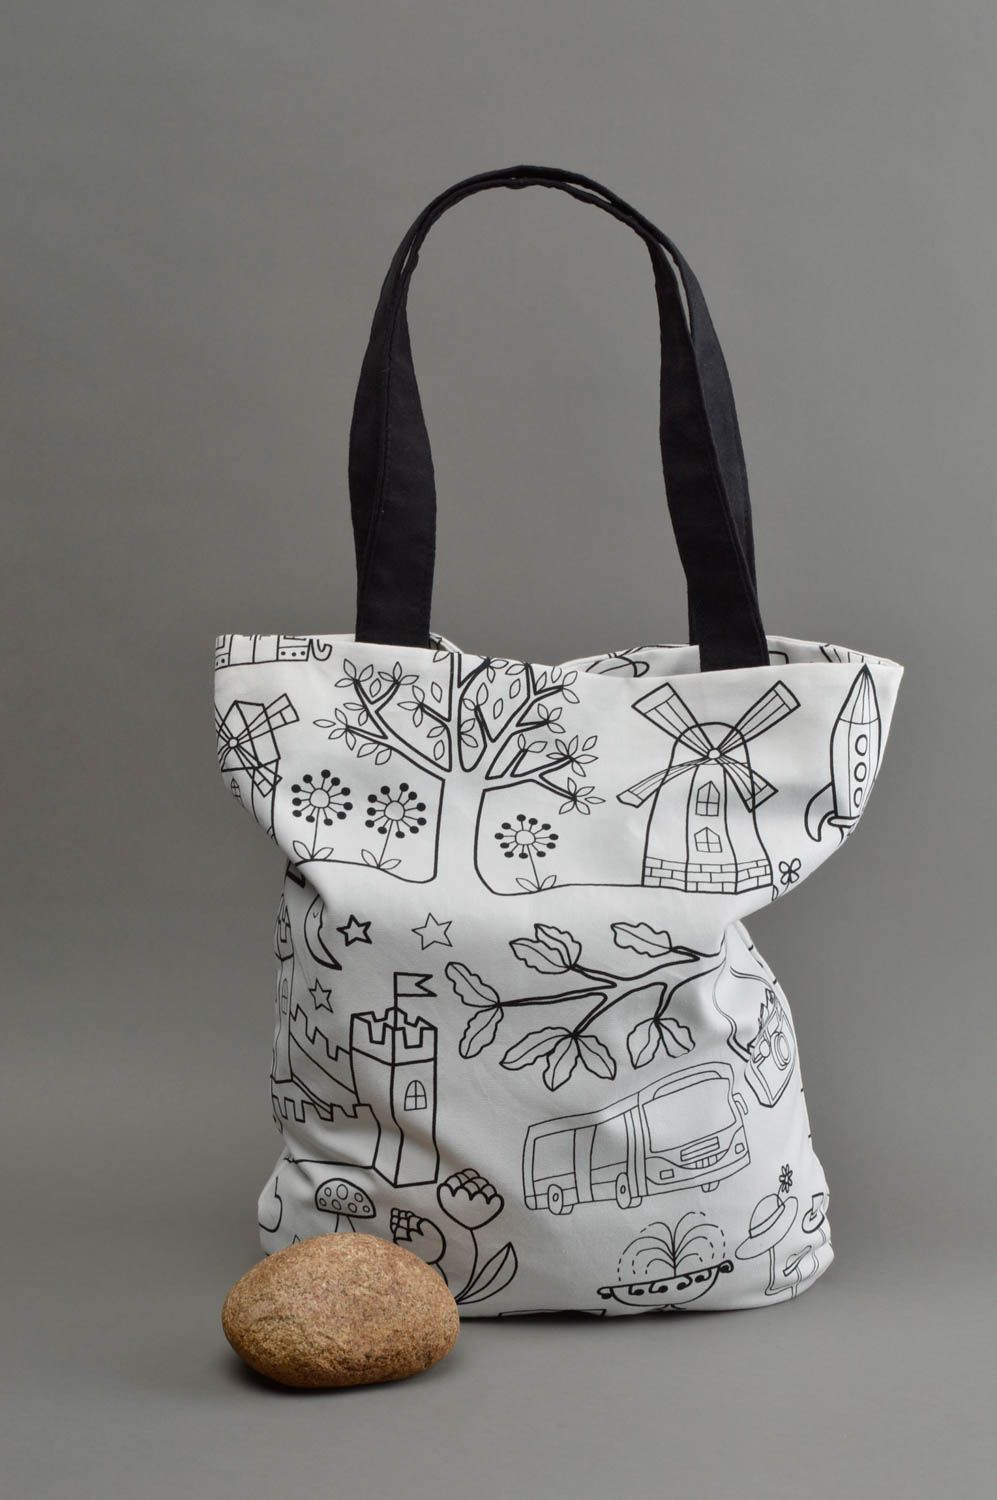 900+ Best Handmade Bags ideas in 2023 | handmade bags, bags, sewing bag